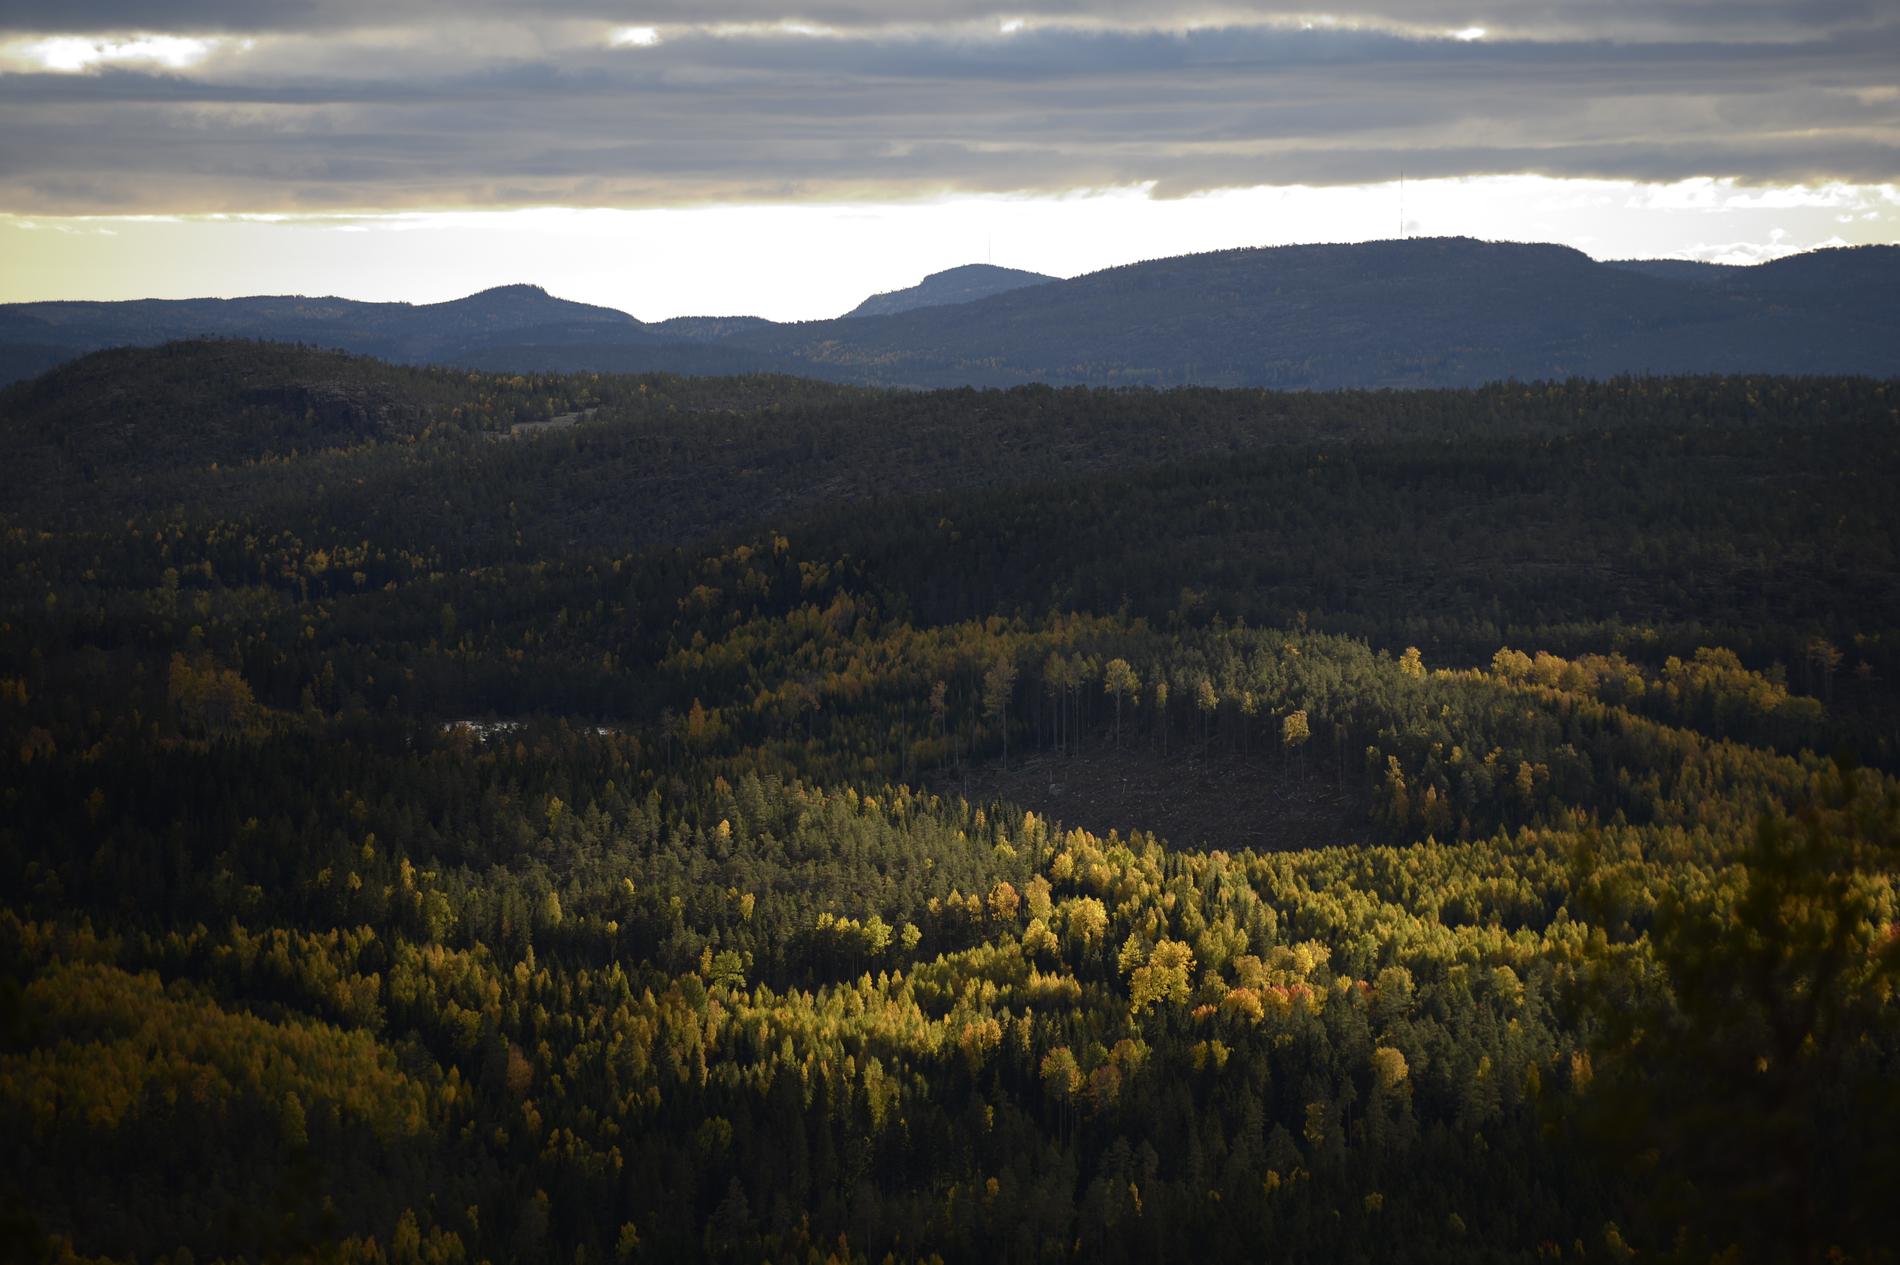 Fler svenskar än vanligt har gett sig ut i naturen under pandemin. Nationalparken på bilden är Skuleskogen i Ångermanland. Arkivbild.